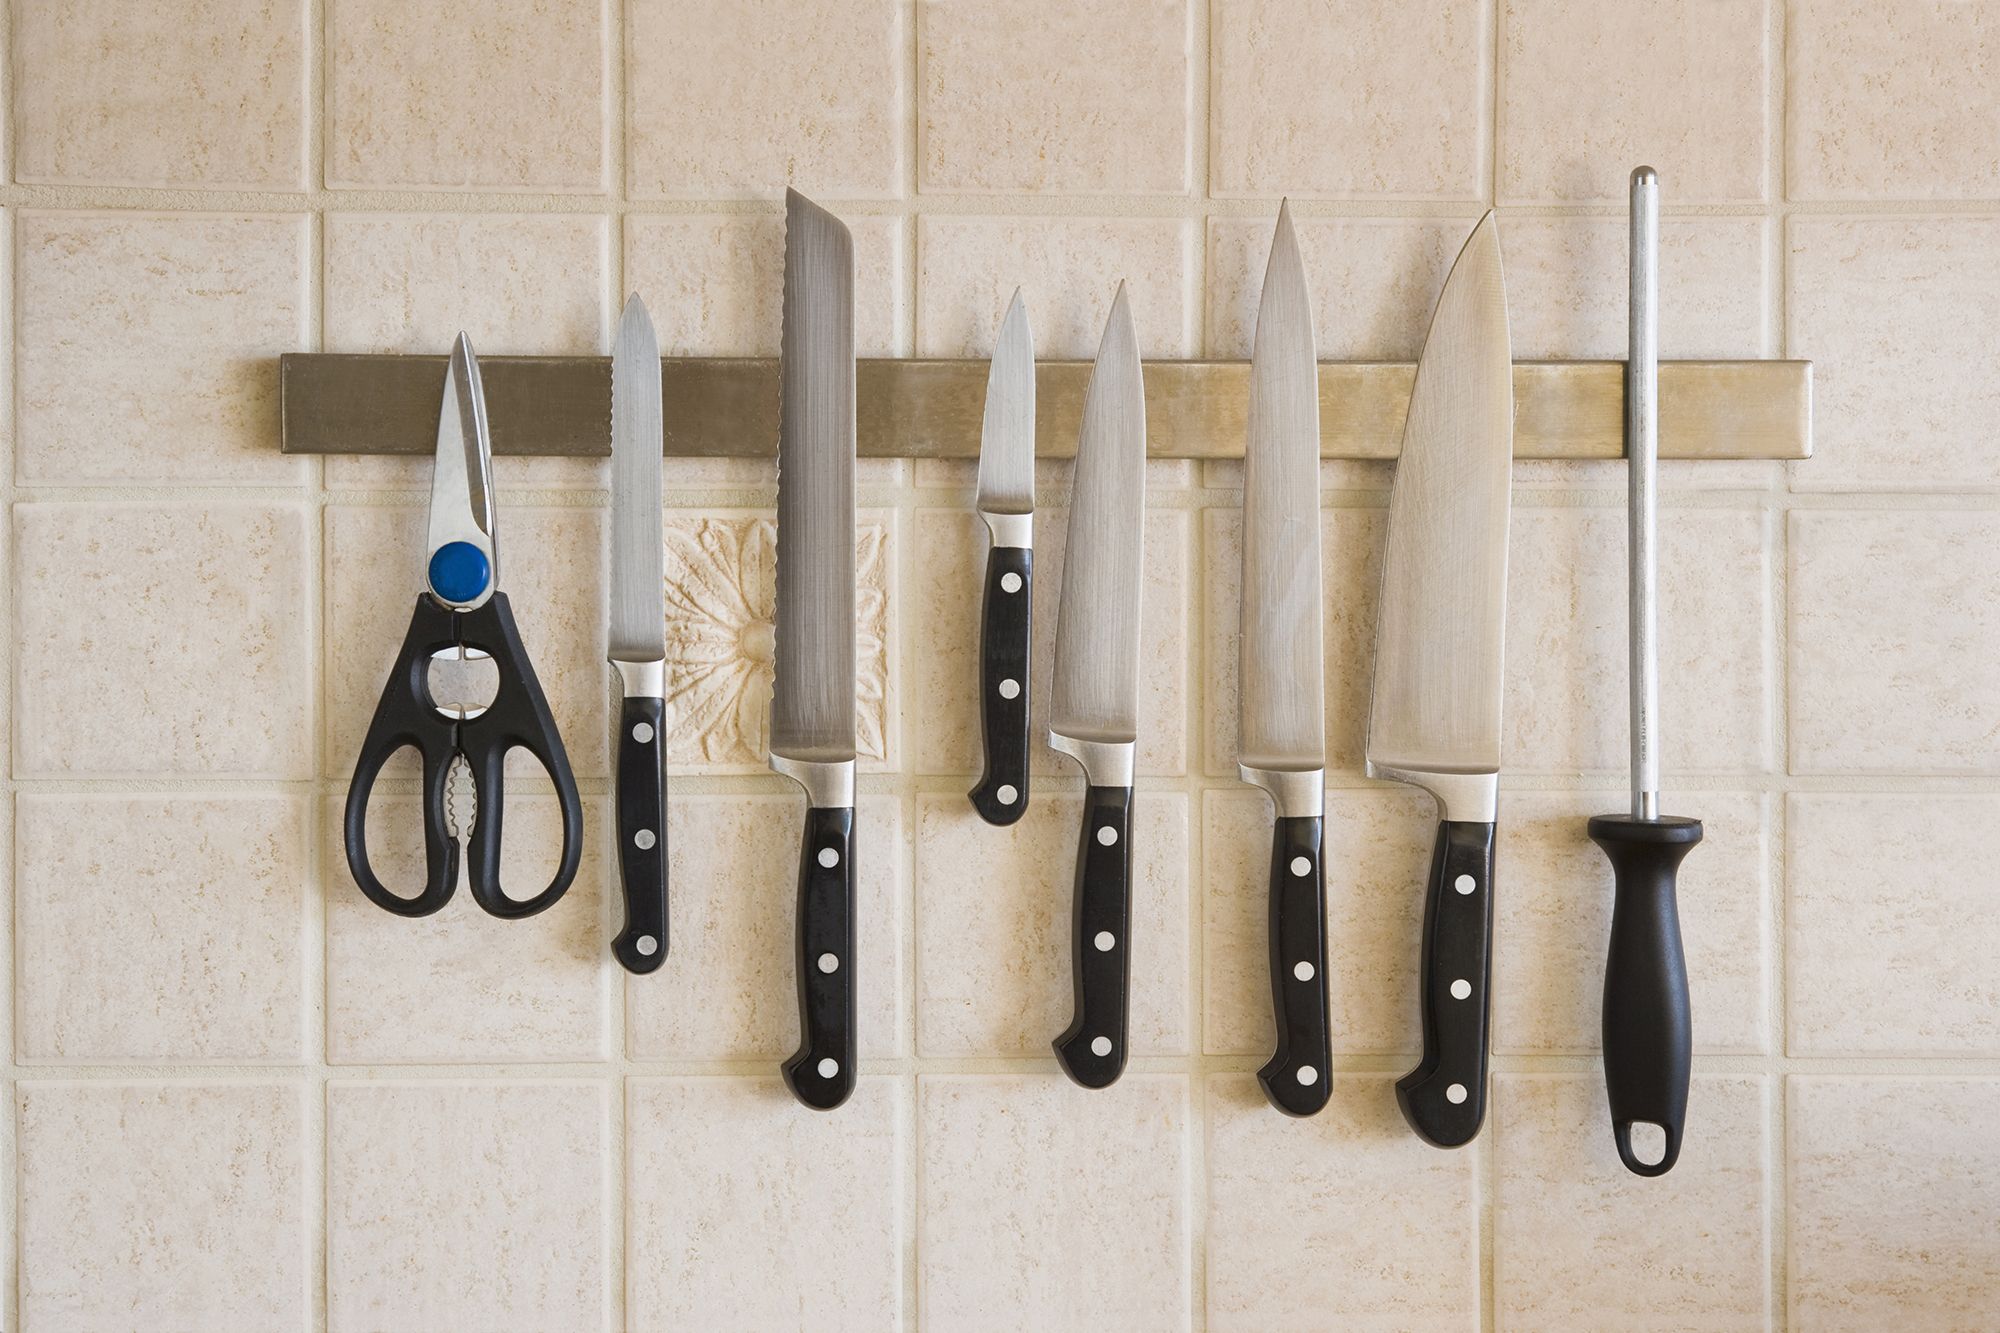 Set de cuchillos para cocina, una compra inteligente - Blog